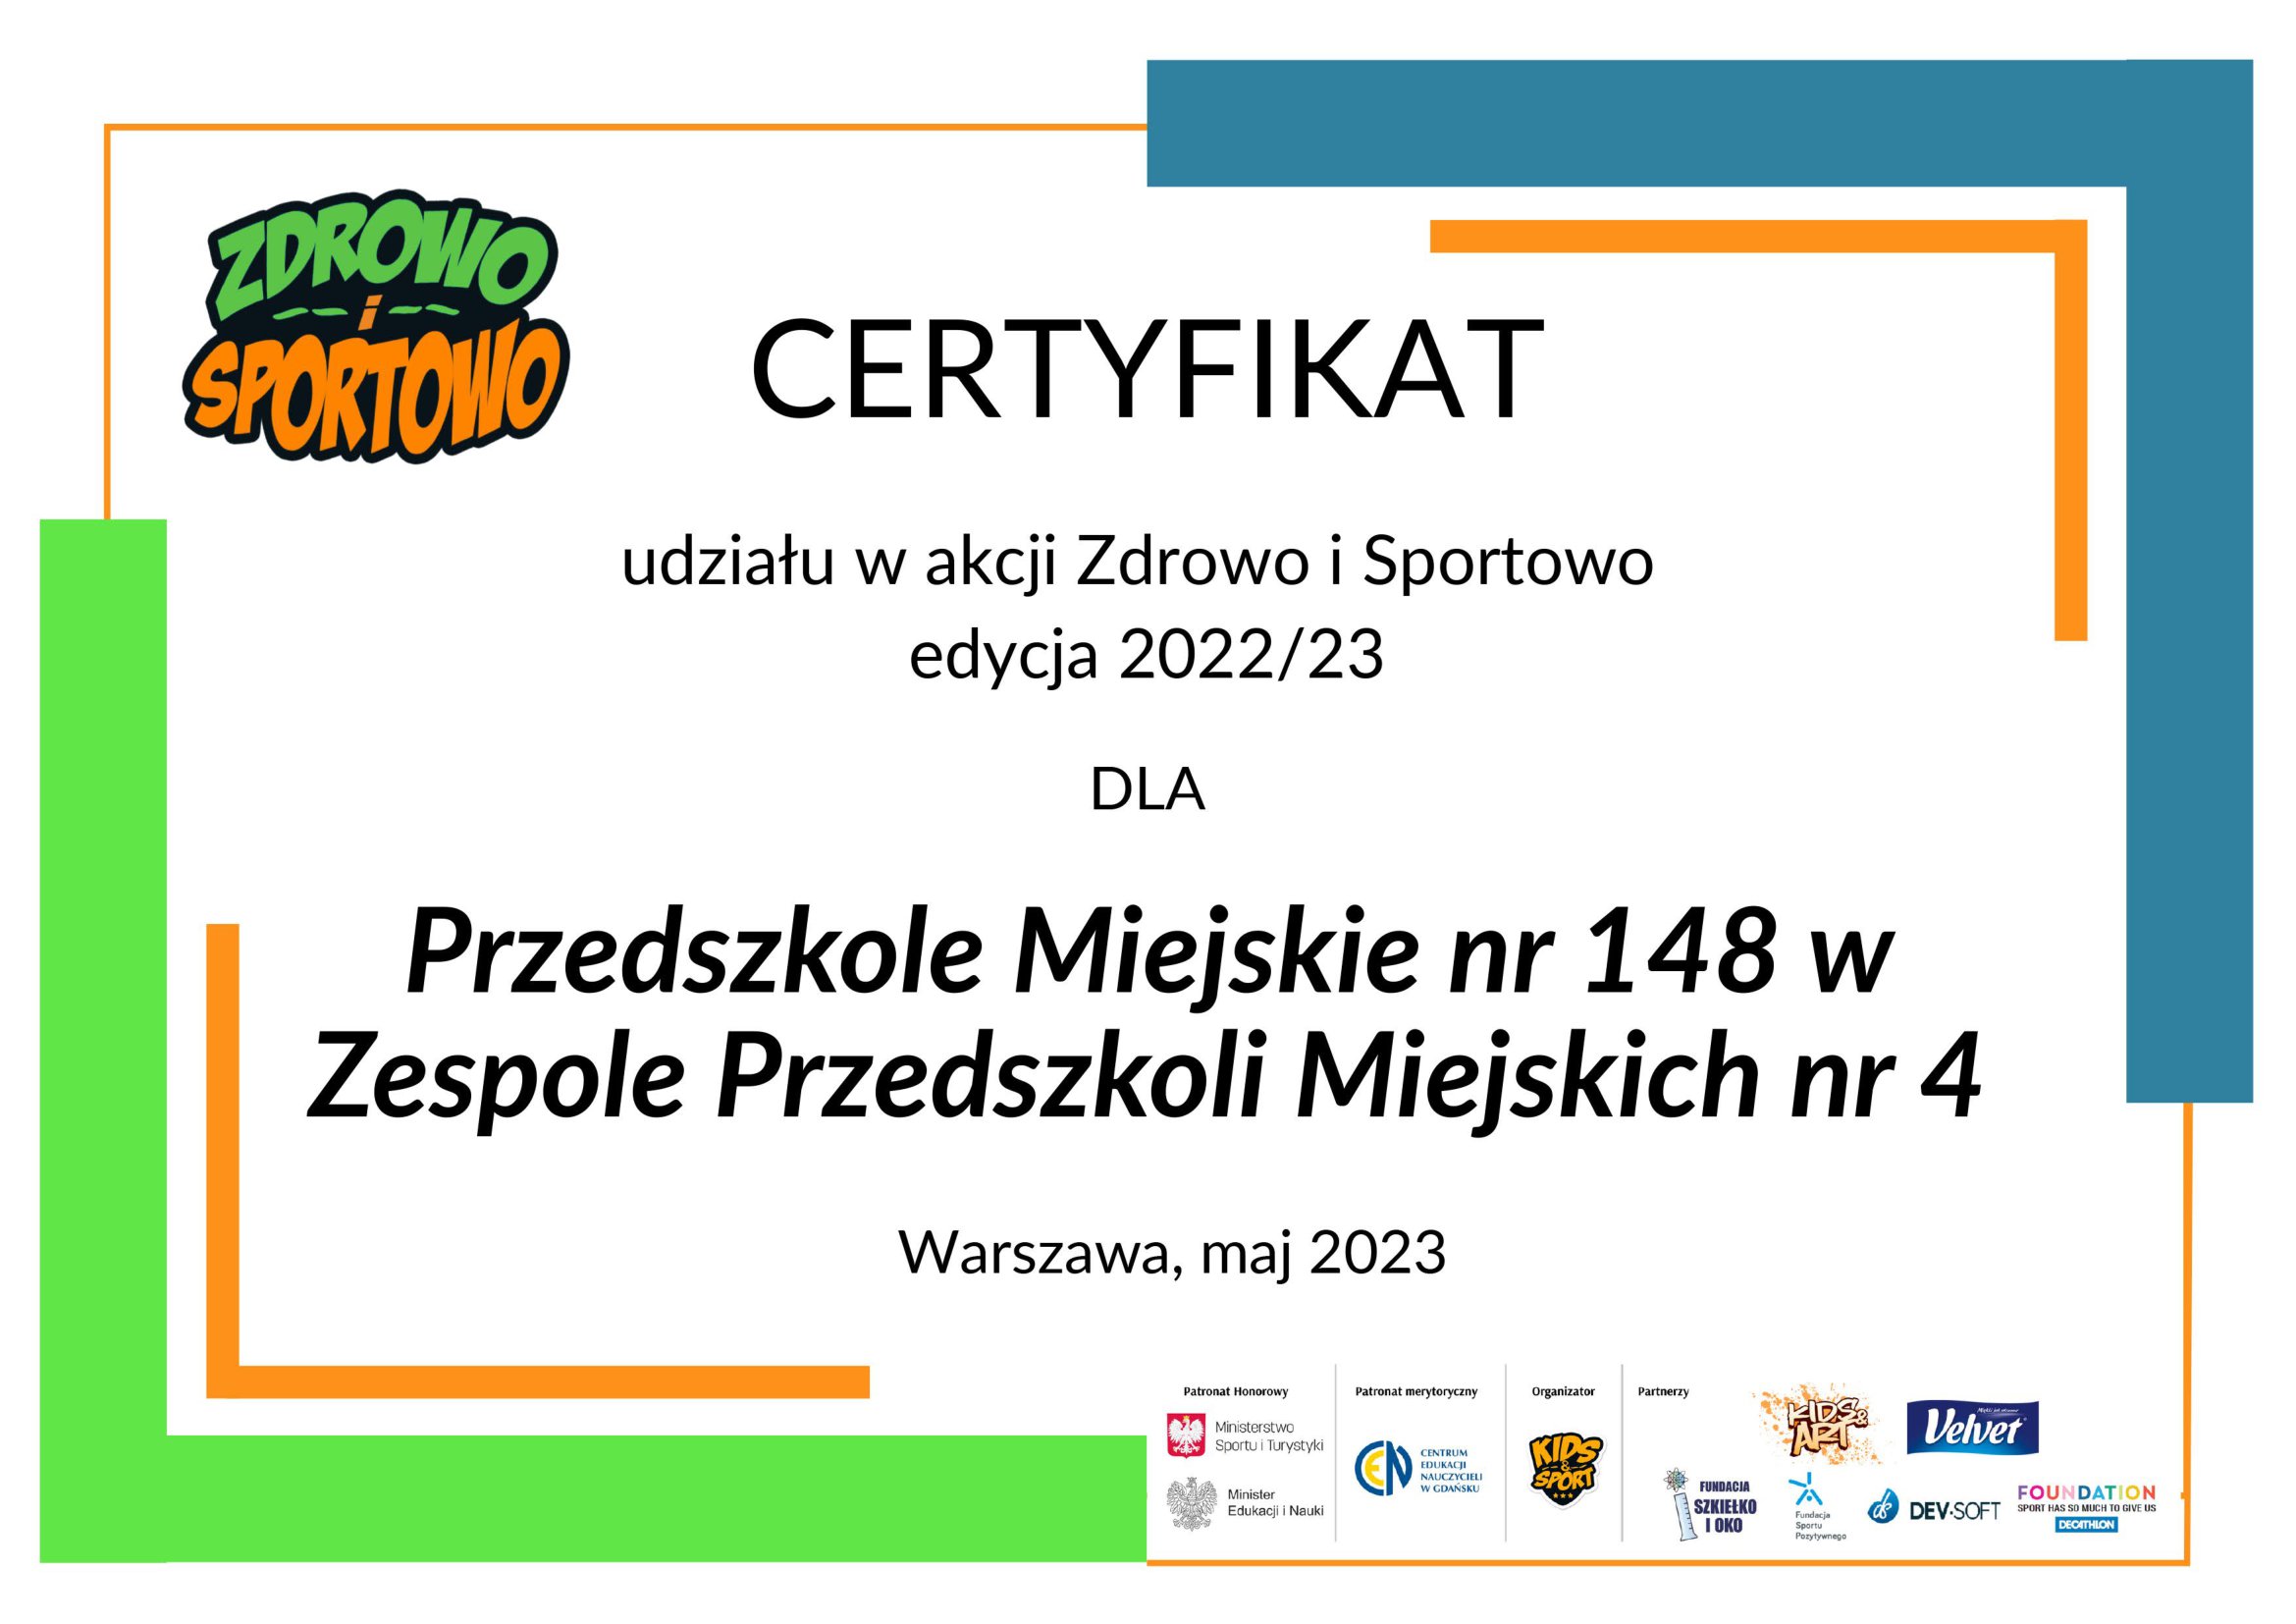 certyfikat przedstawiający ozdobny napis dotyczący uczestnictwa PM nr 148 w akcji Zdrowo i Sportowo